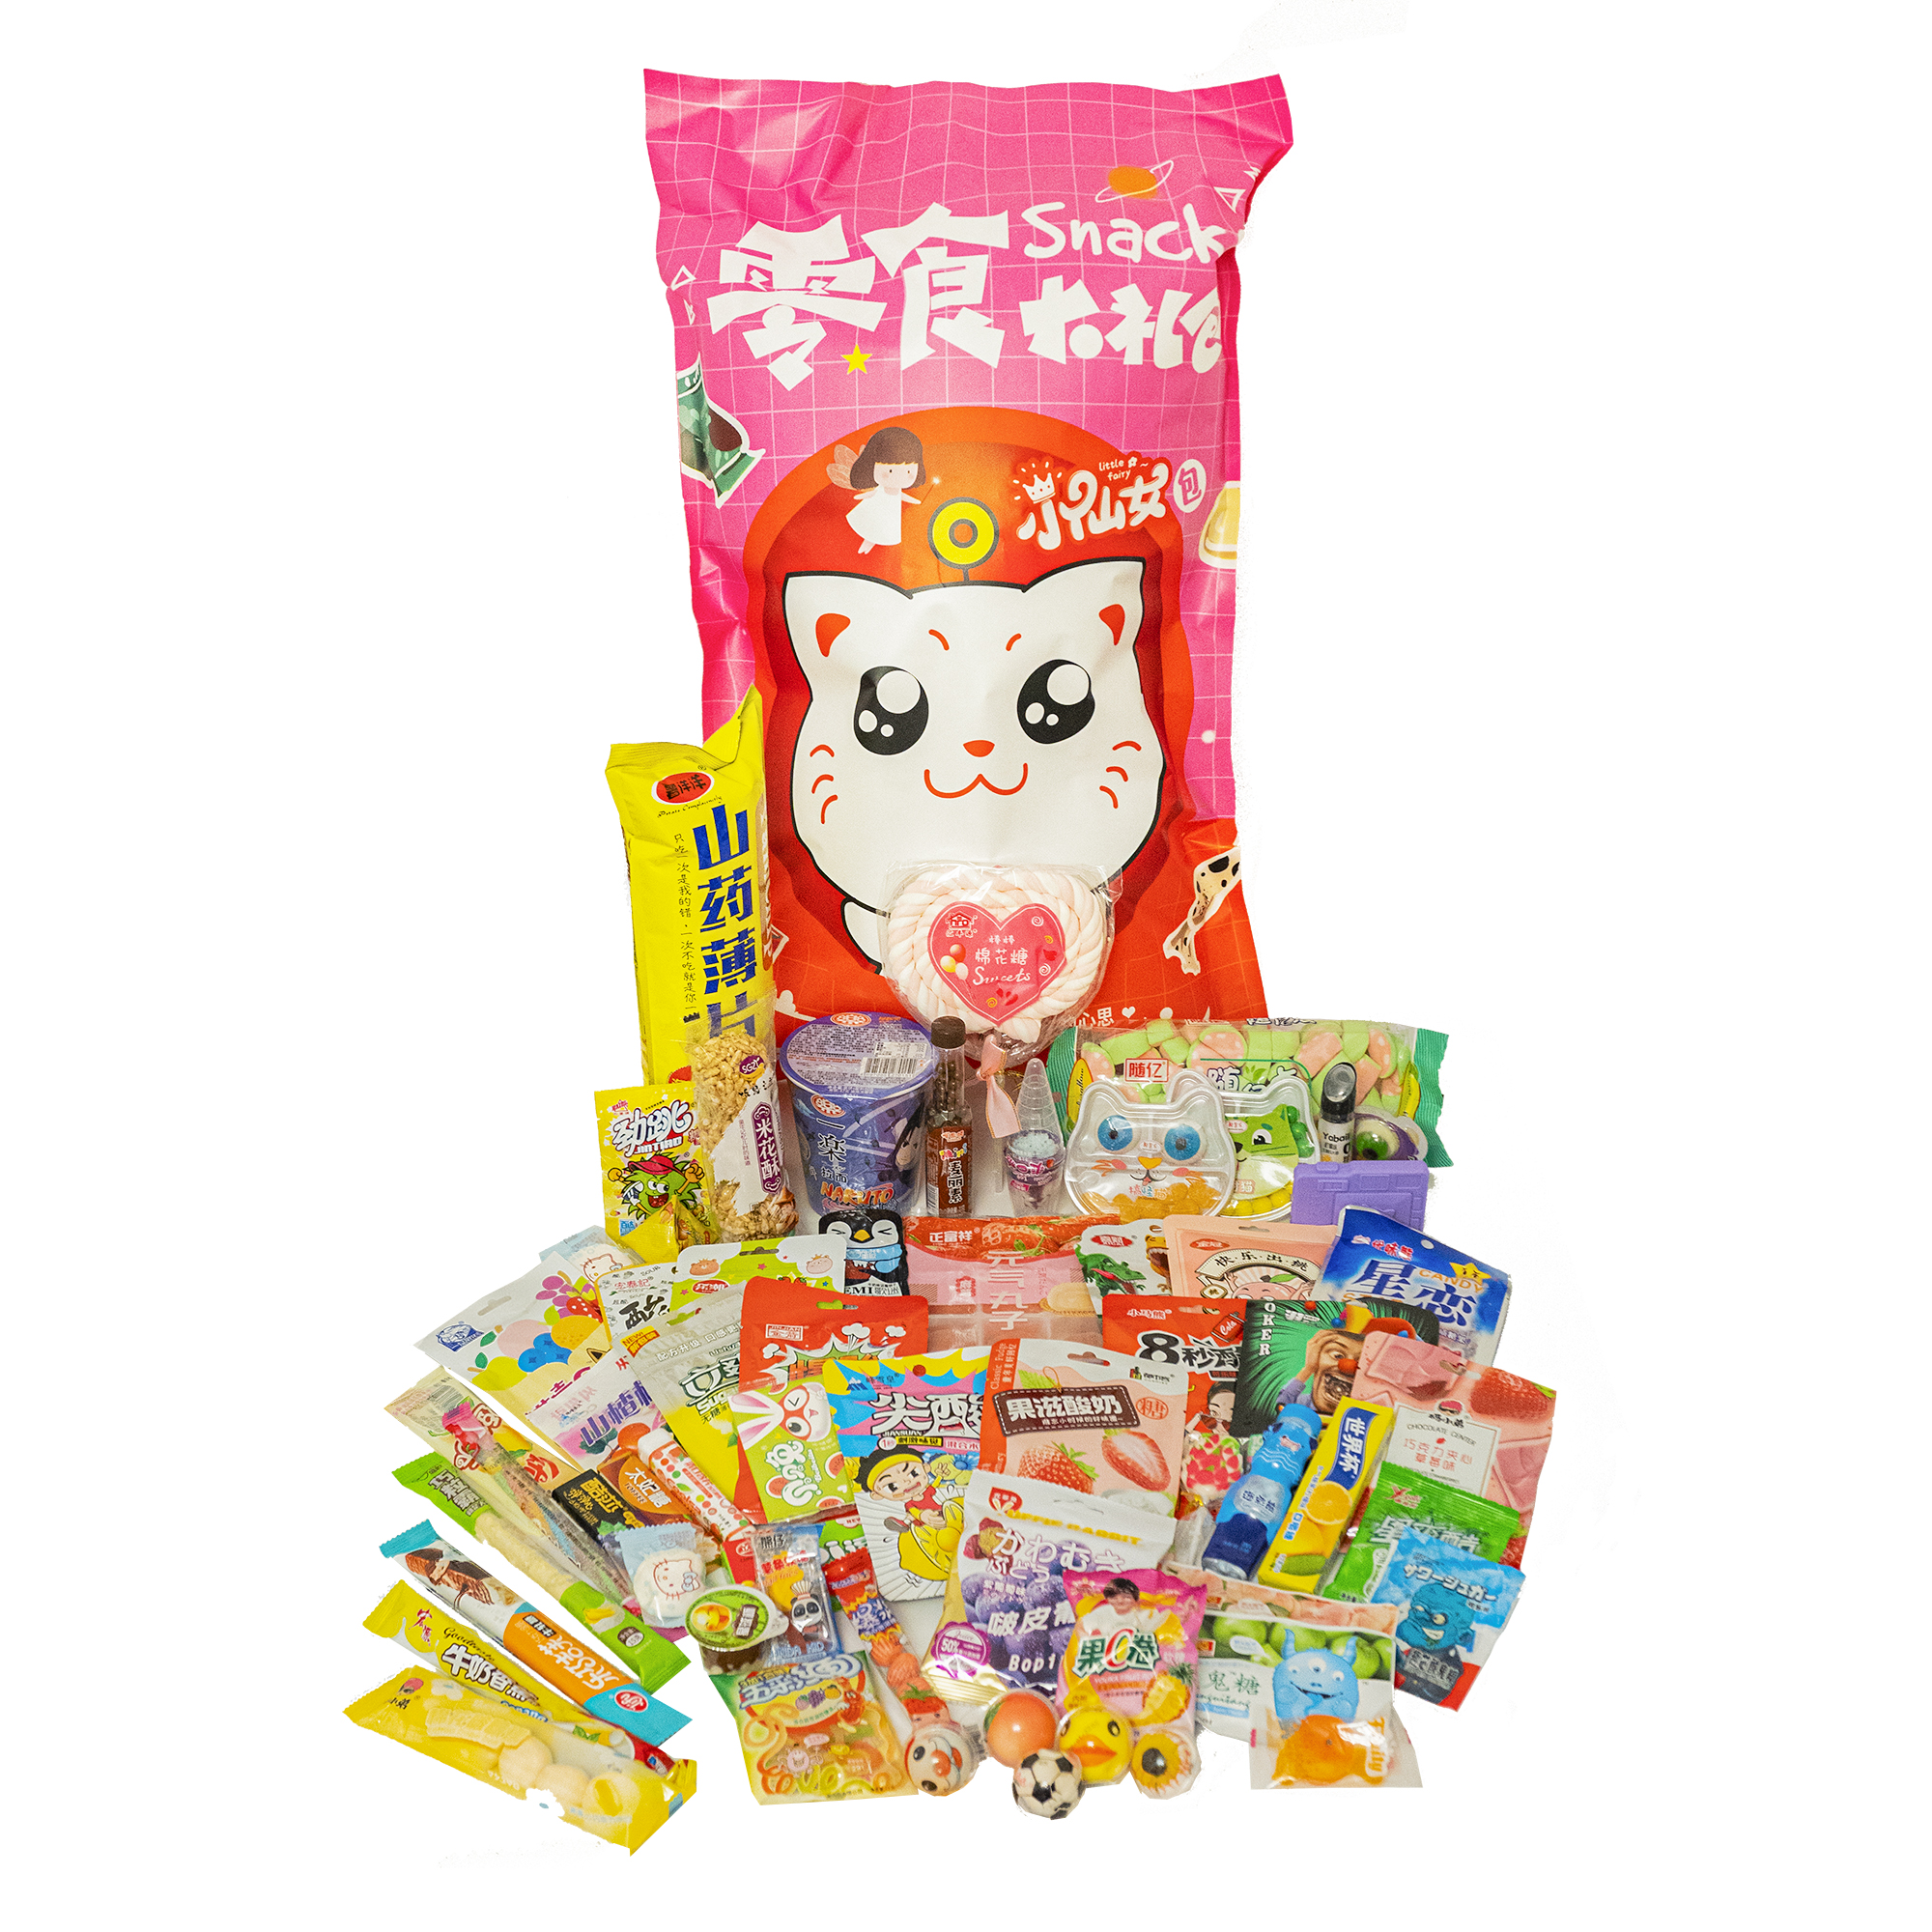 Подарочный набор Yokee Pinky кот из 60 азиатских сладостей